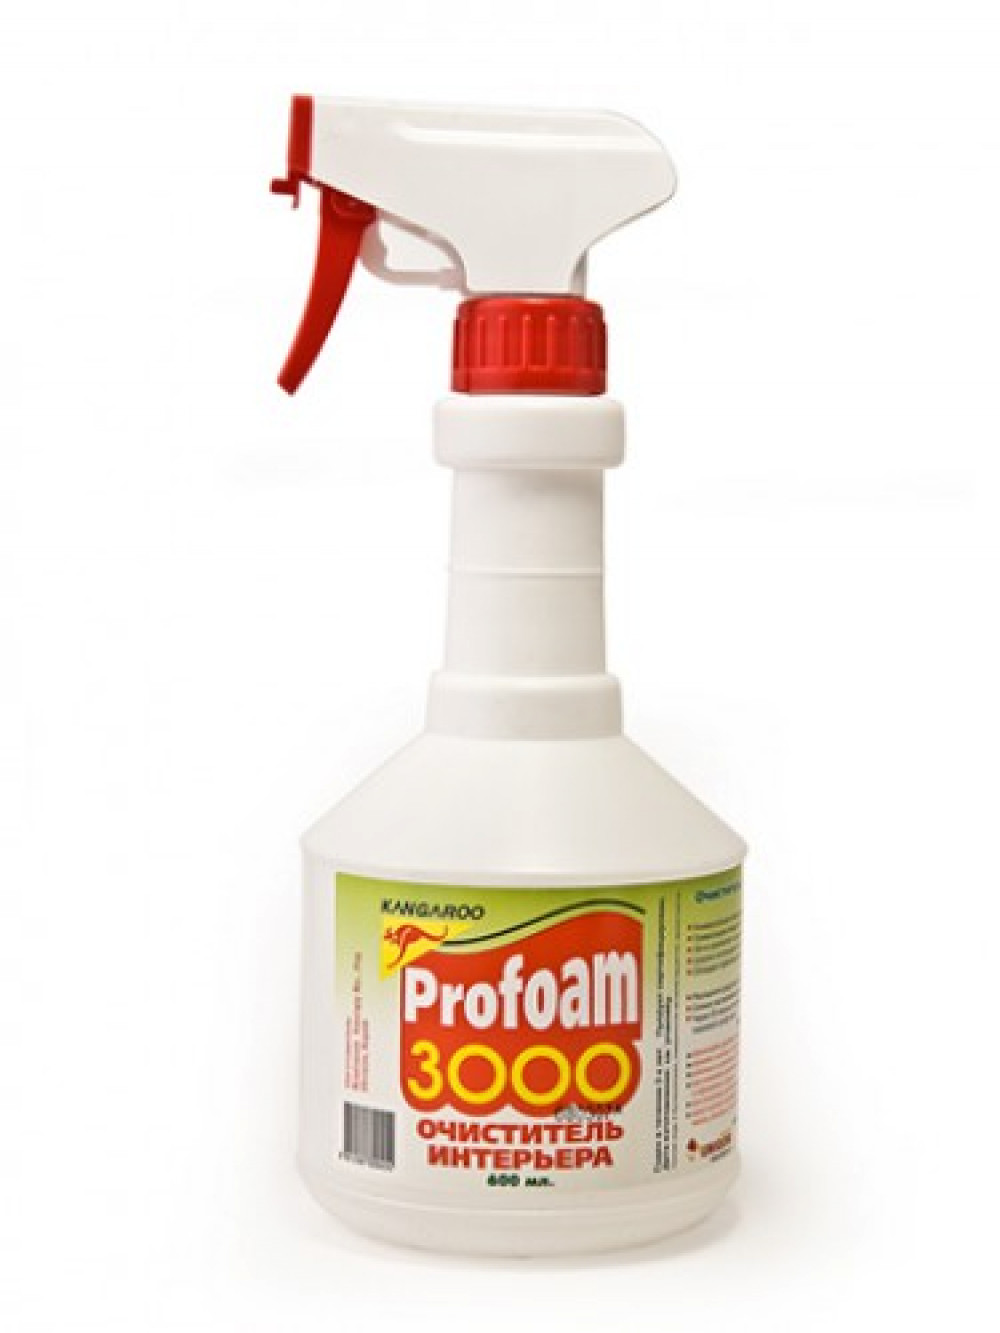 Очиститель   PROFAM -3000 (очиститель интерьера)   600 мл